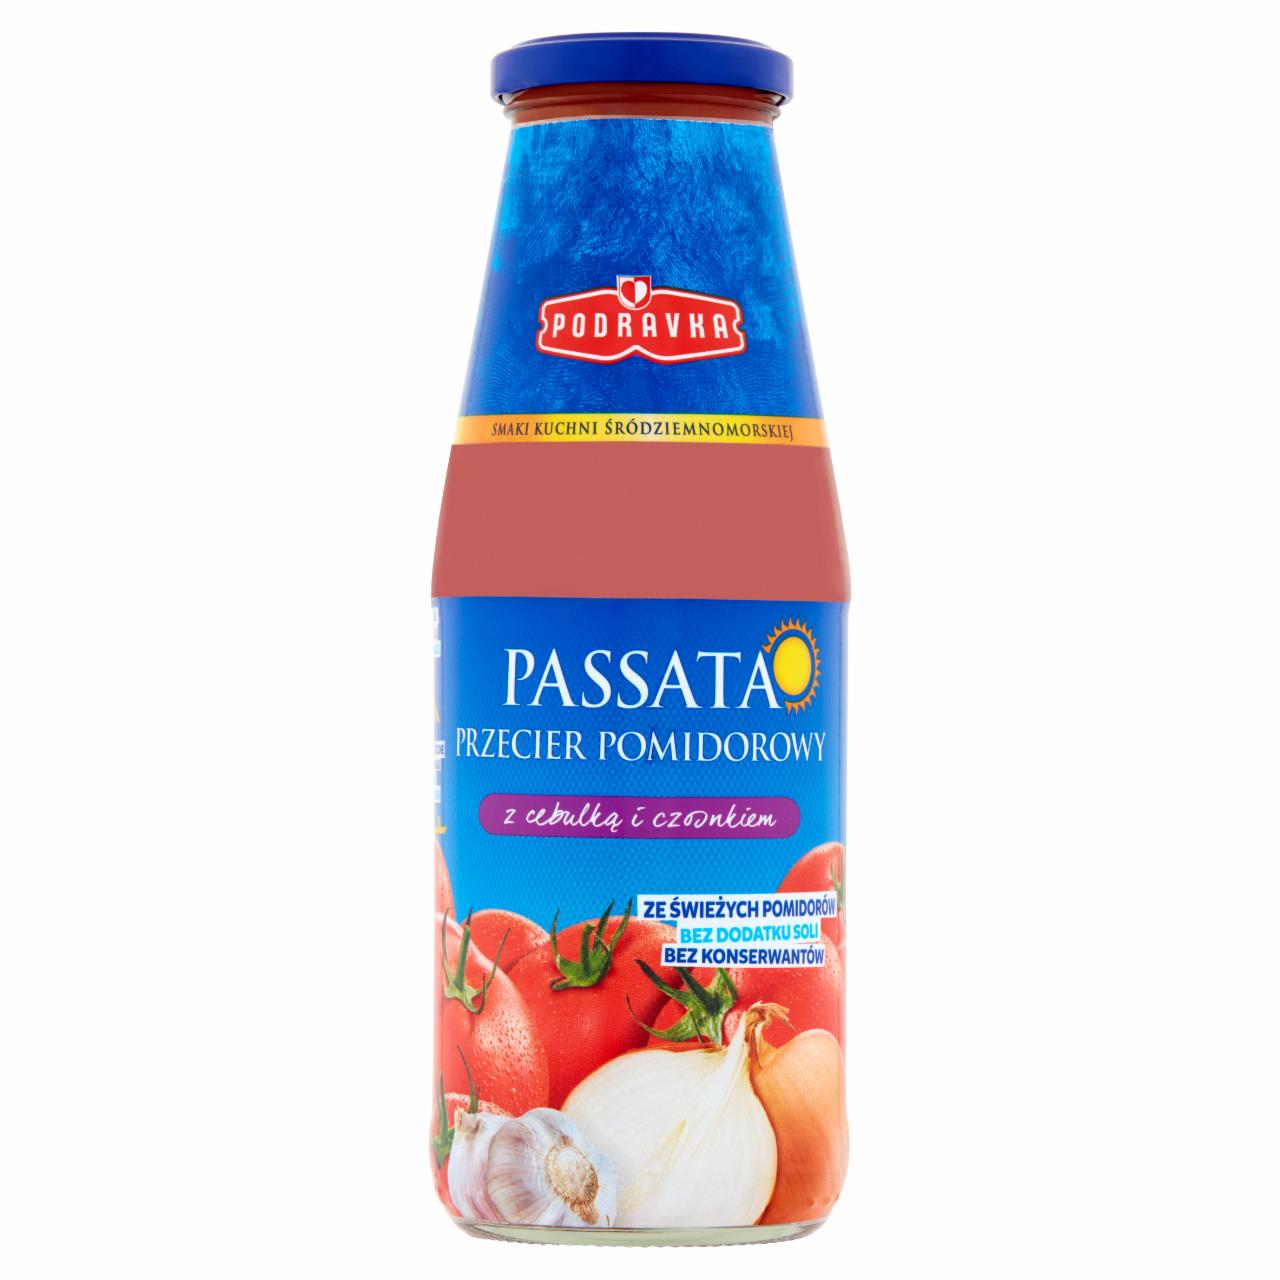 Fotografie - Passata przecier pomidorowy z cebulką i czosnkiem Podravka